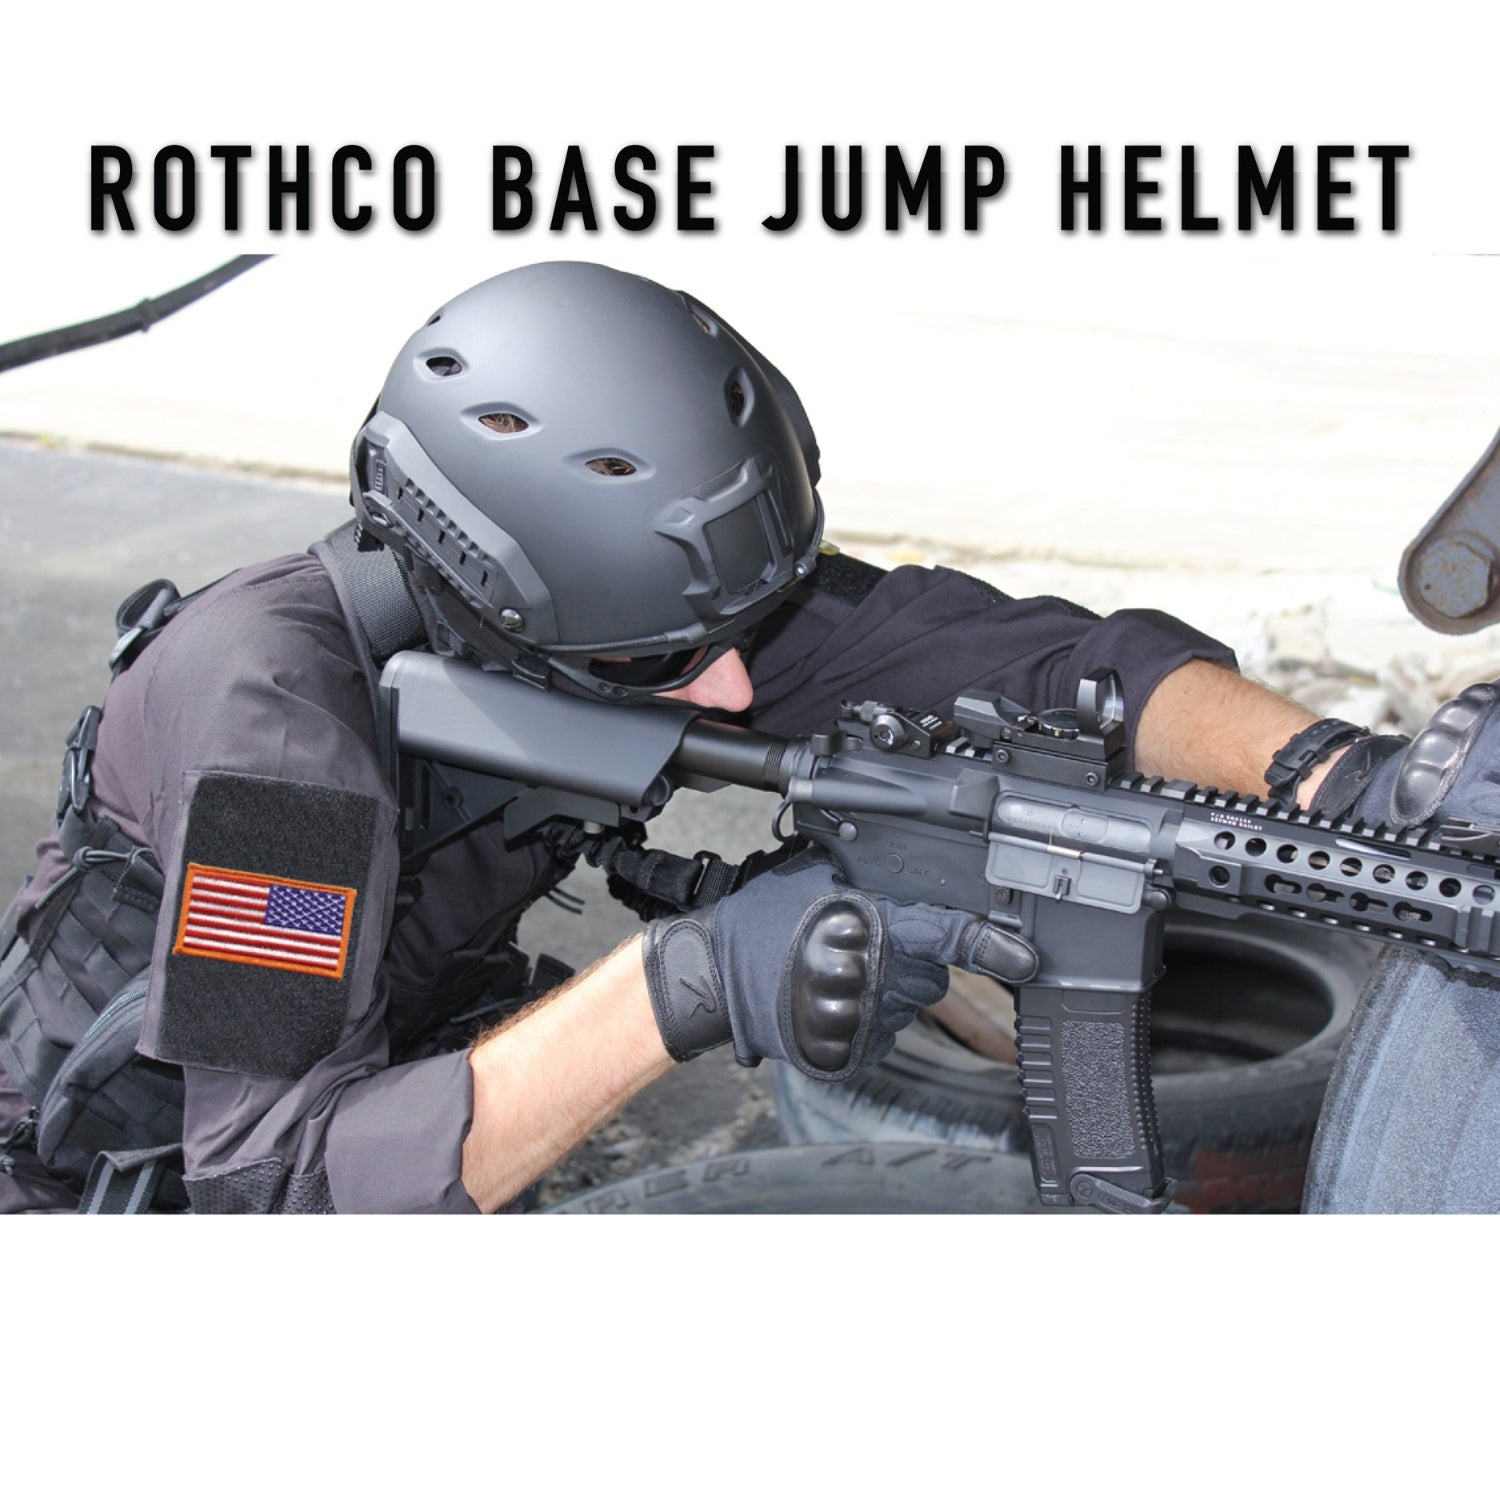 Rothco Base Jump Helmet | All Security Equipment - 6